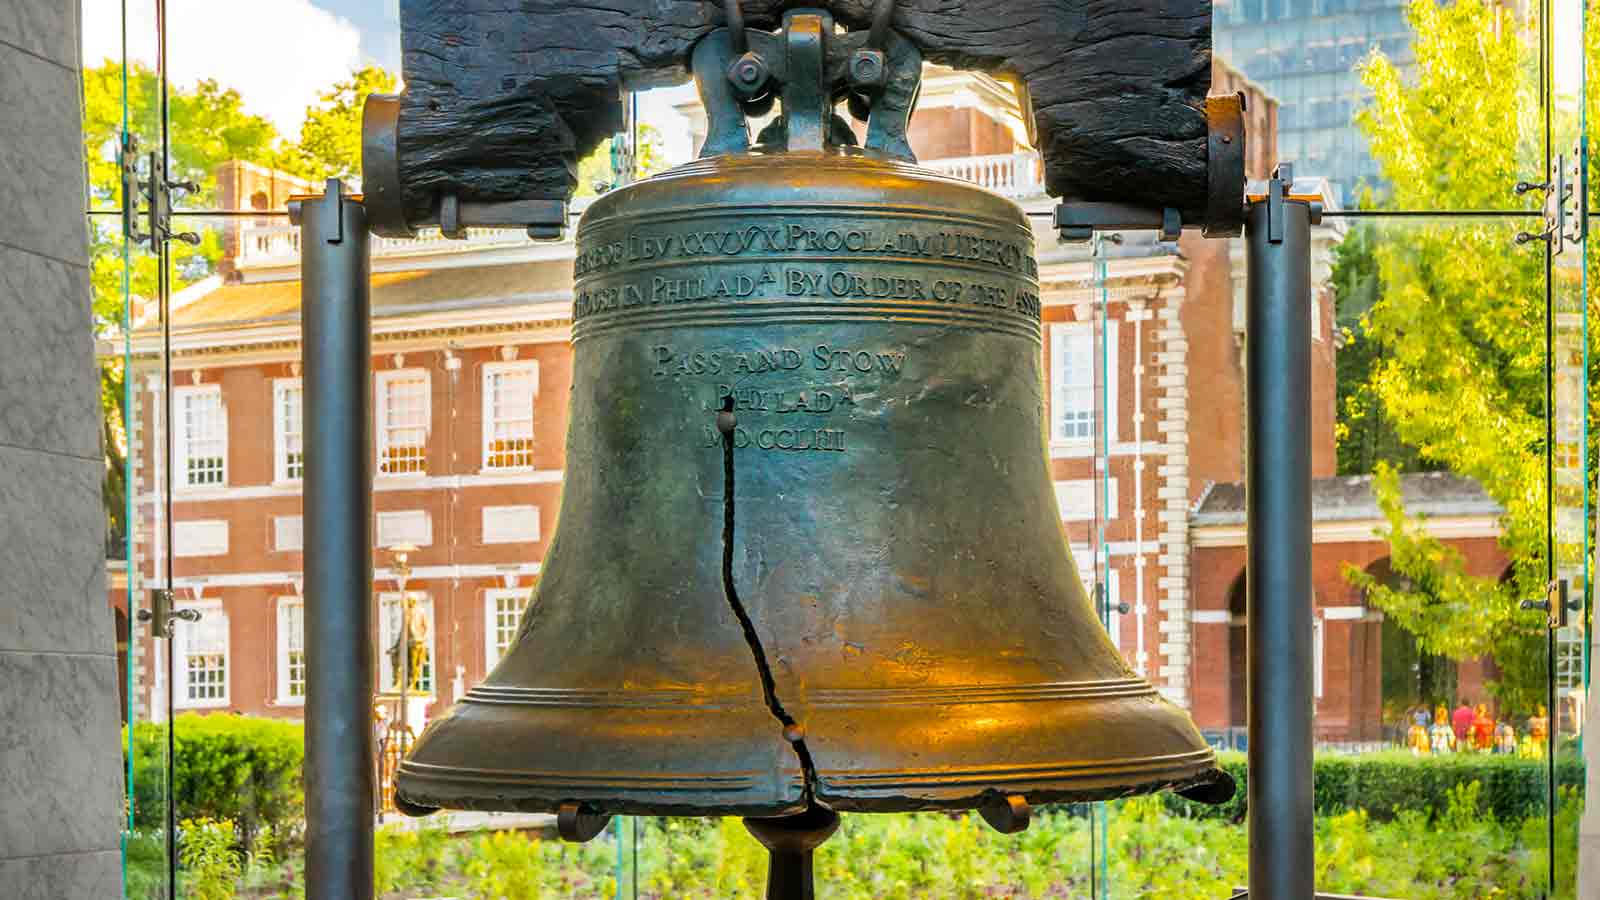 Pri-Med Philadelphia | The Liberty Bell